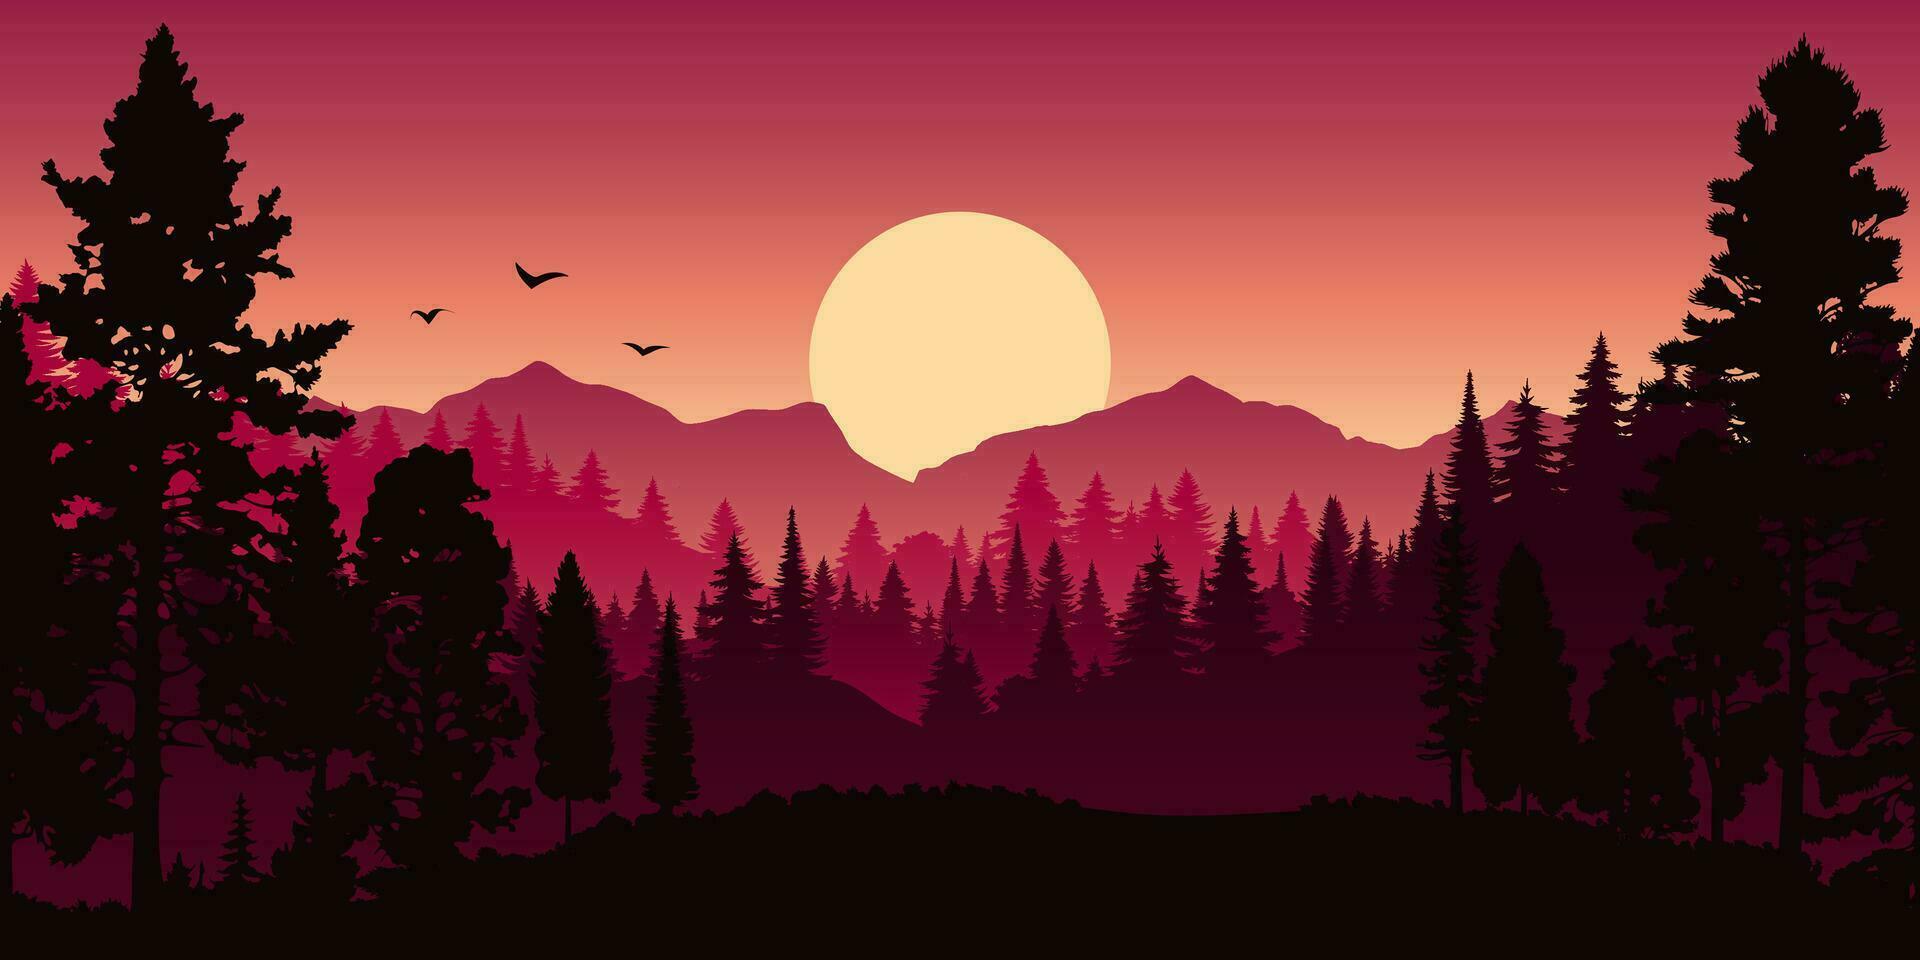 vector paisagem horizontal vermelha com nevoeiro, floresta, abeto, abeto e pôr do sol. ilustração de outono da silhueta de vista panorâmica, névoa e montanhas laranja. árvores da temporada de outono.